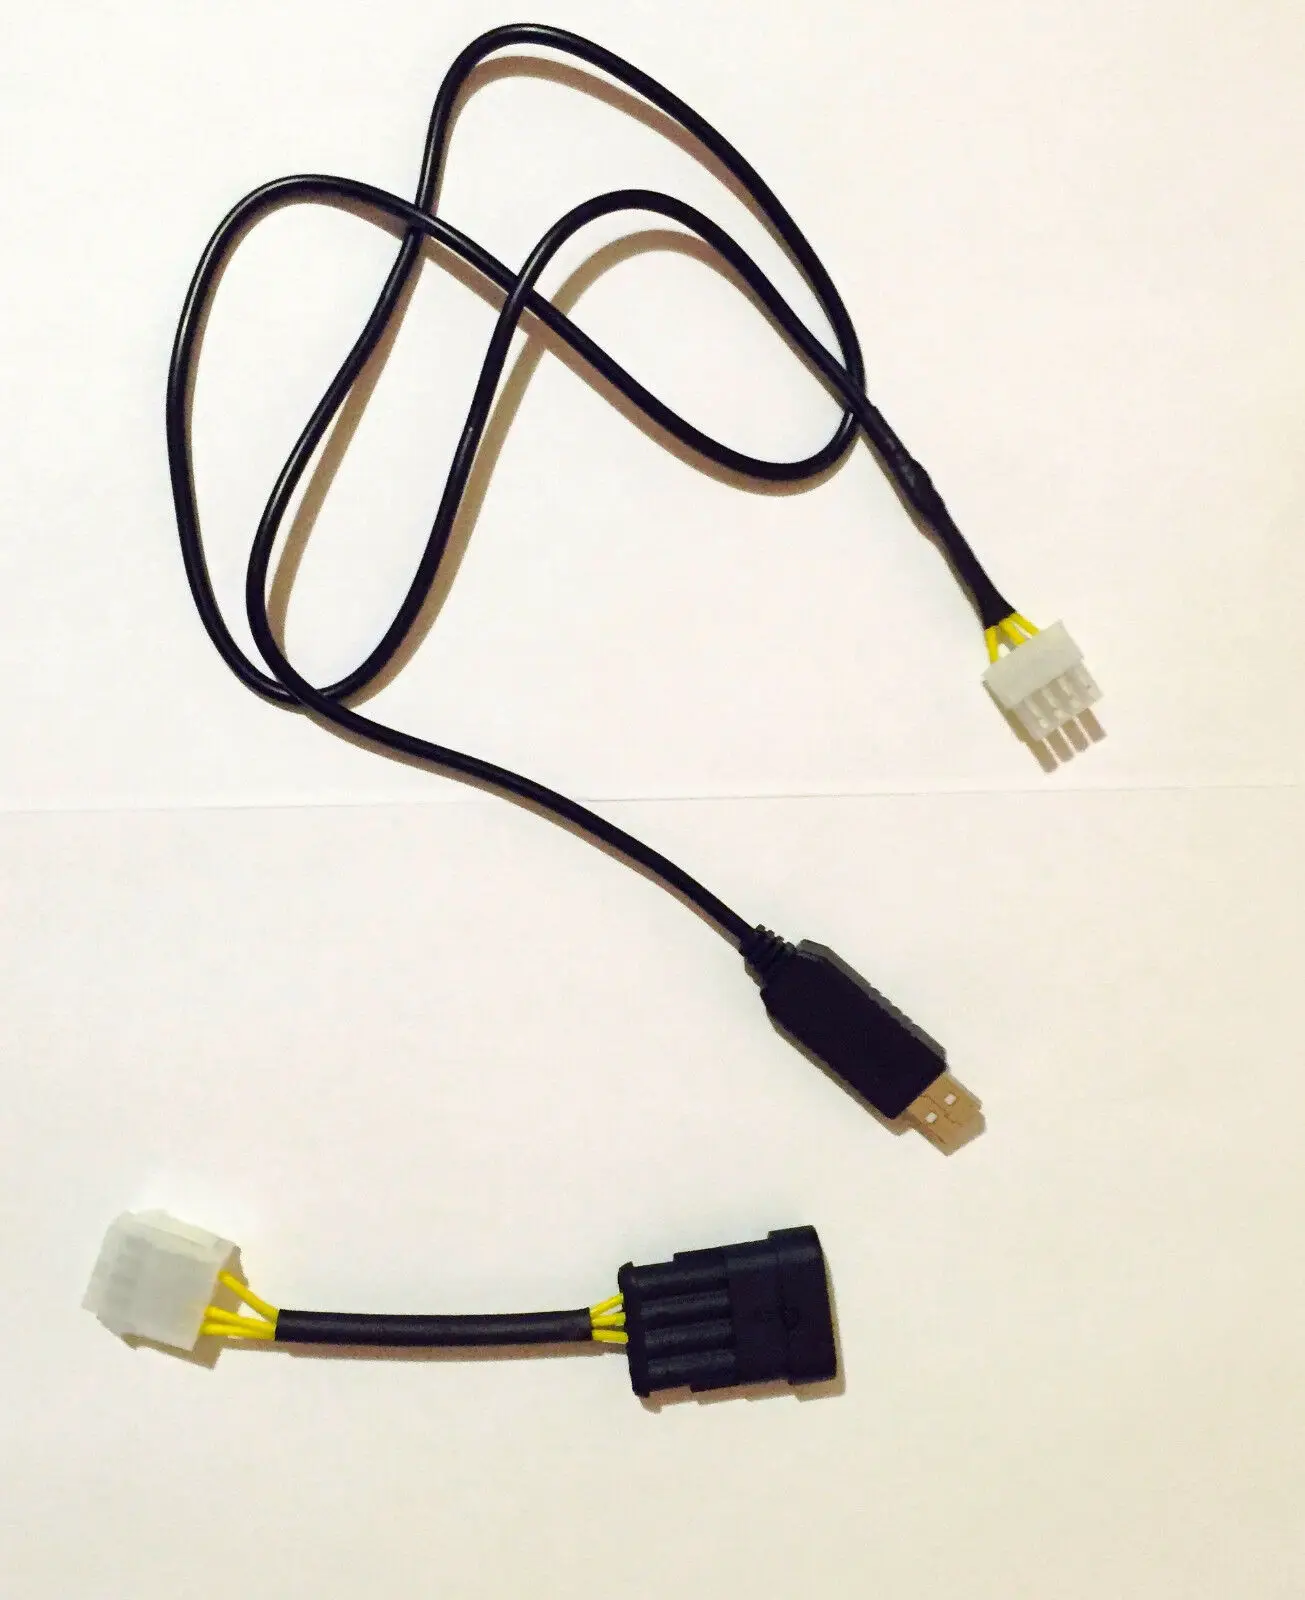 4 x USB LPG интерфейс диагностики Lovato Romano Landi Renzo KME Bigas Stag